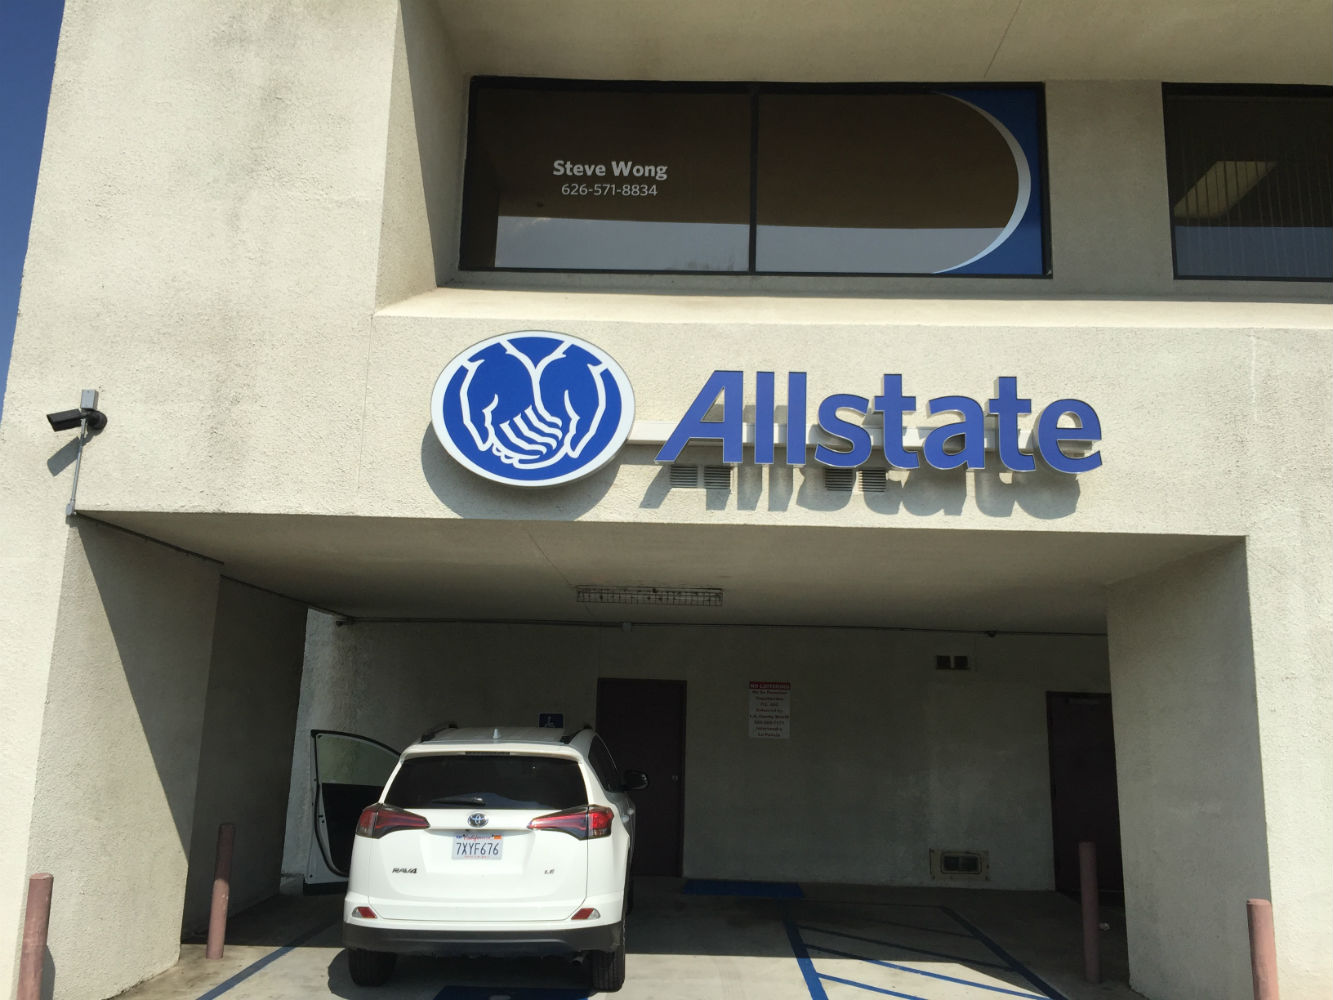 Steve Wong: Allstate Insurance Photo